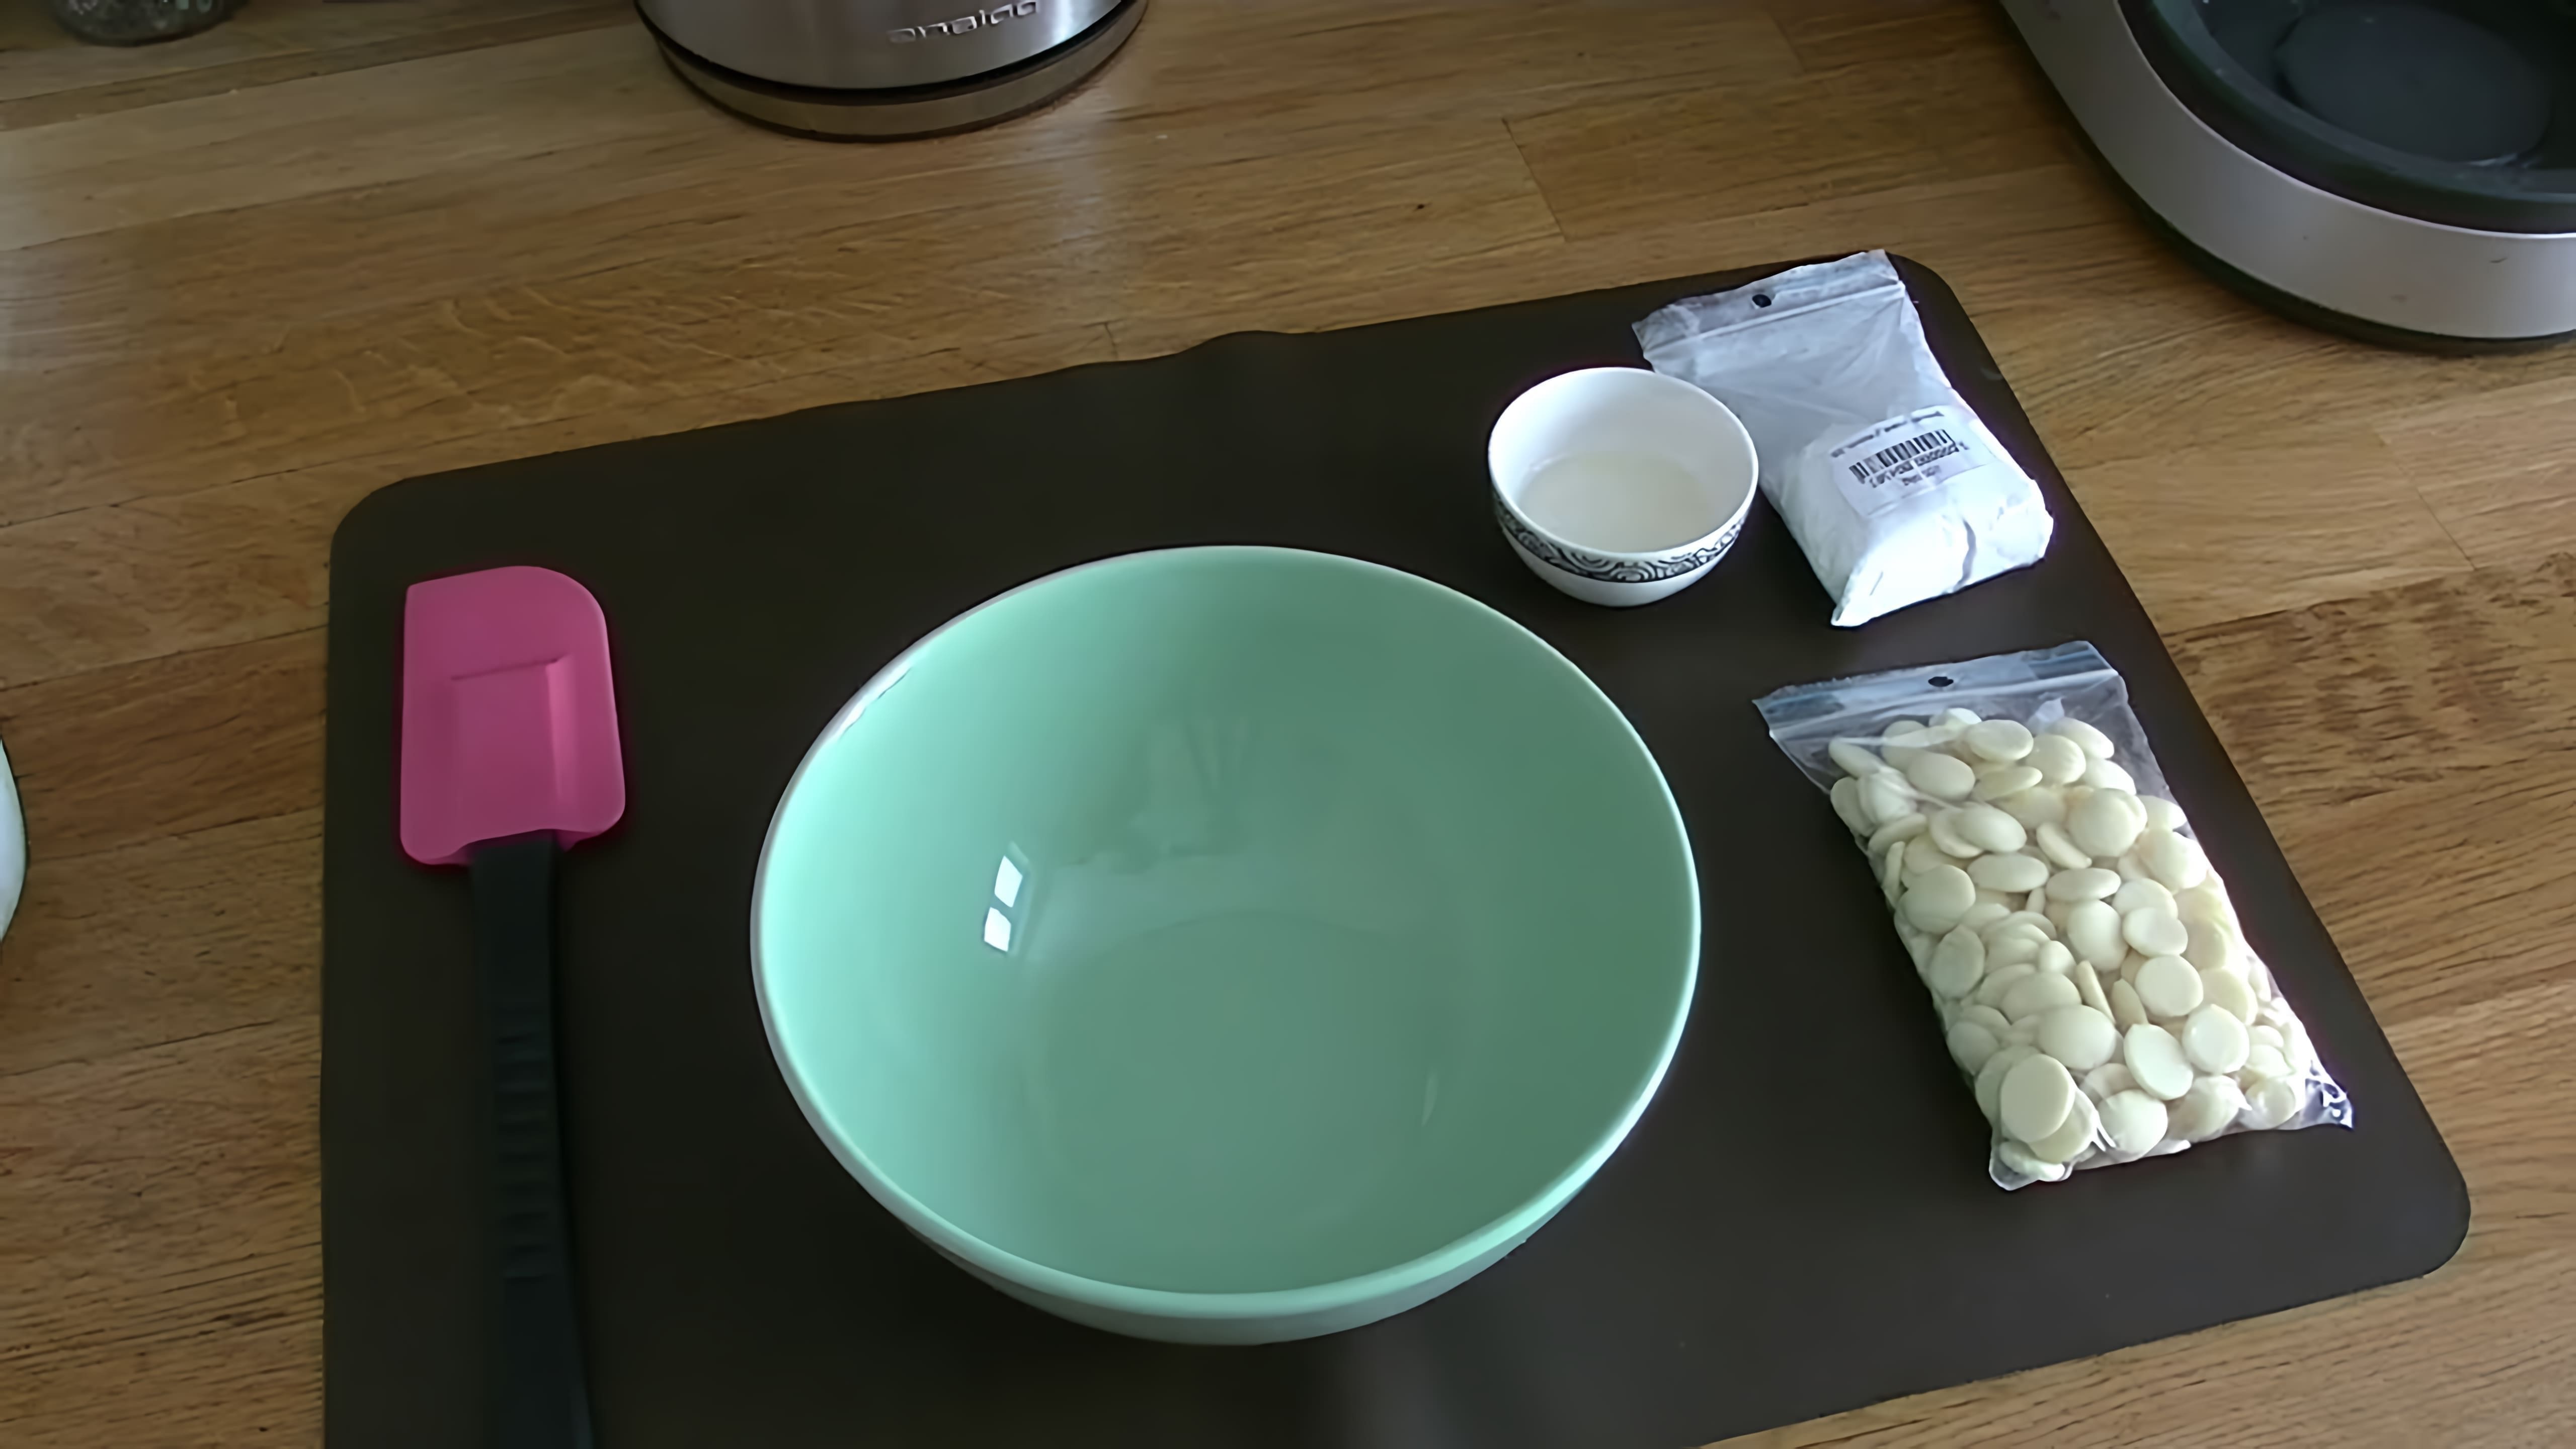 В данном видео демонстрируется процесс создания белых потеков из шоколада на торте